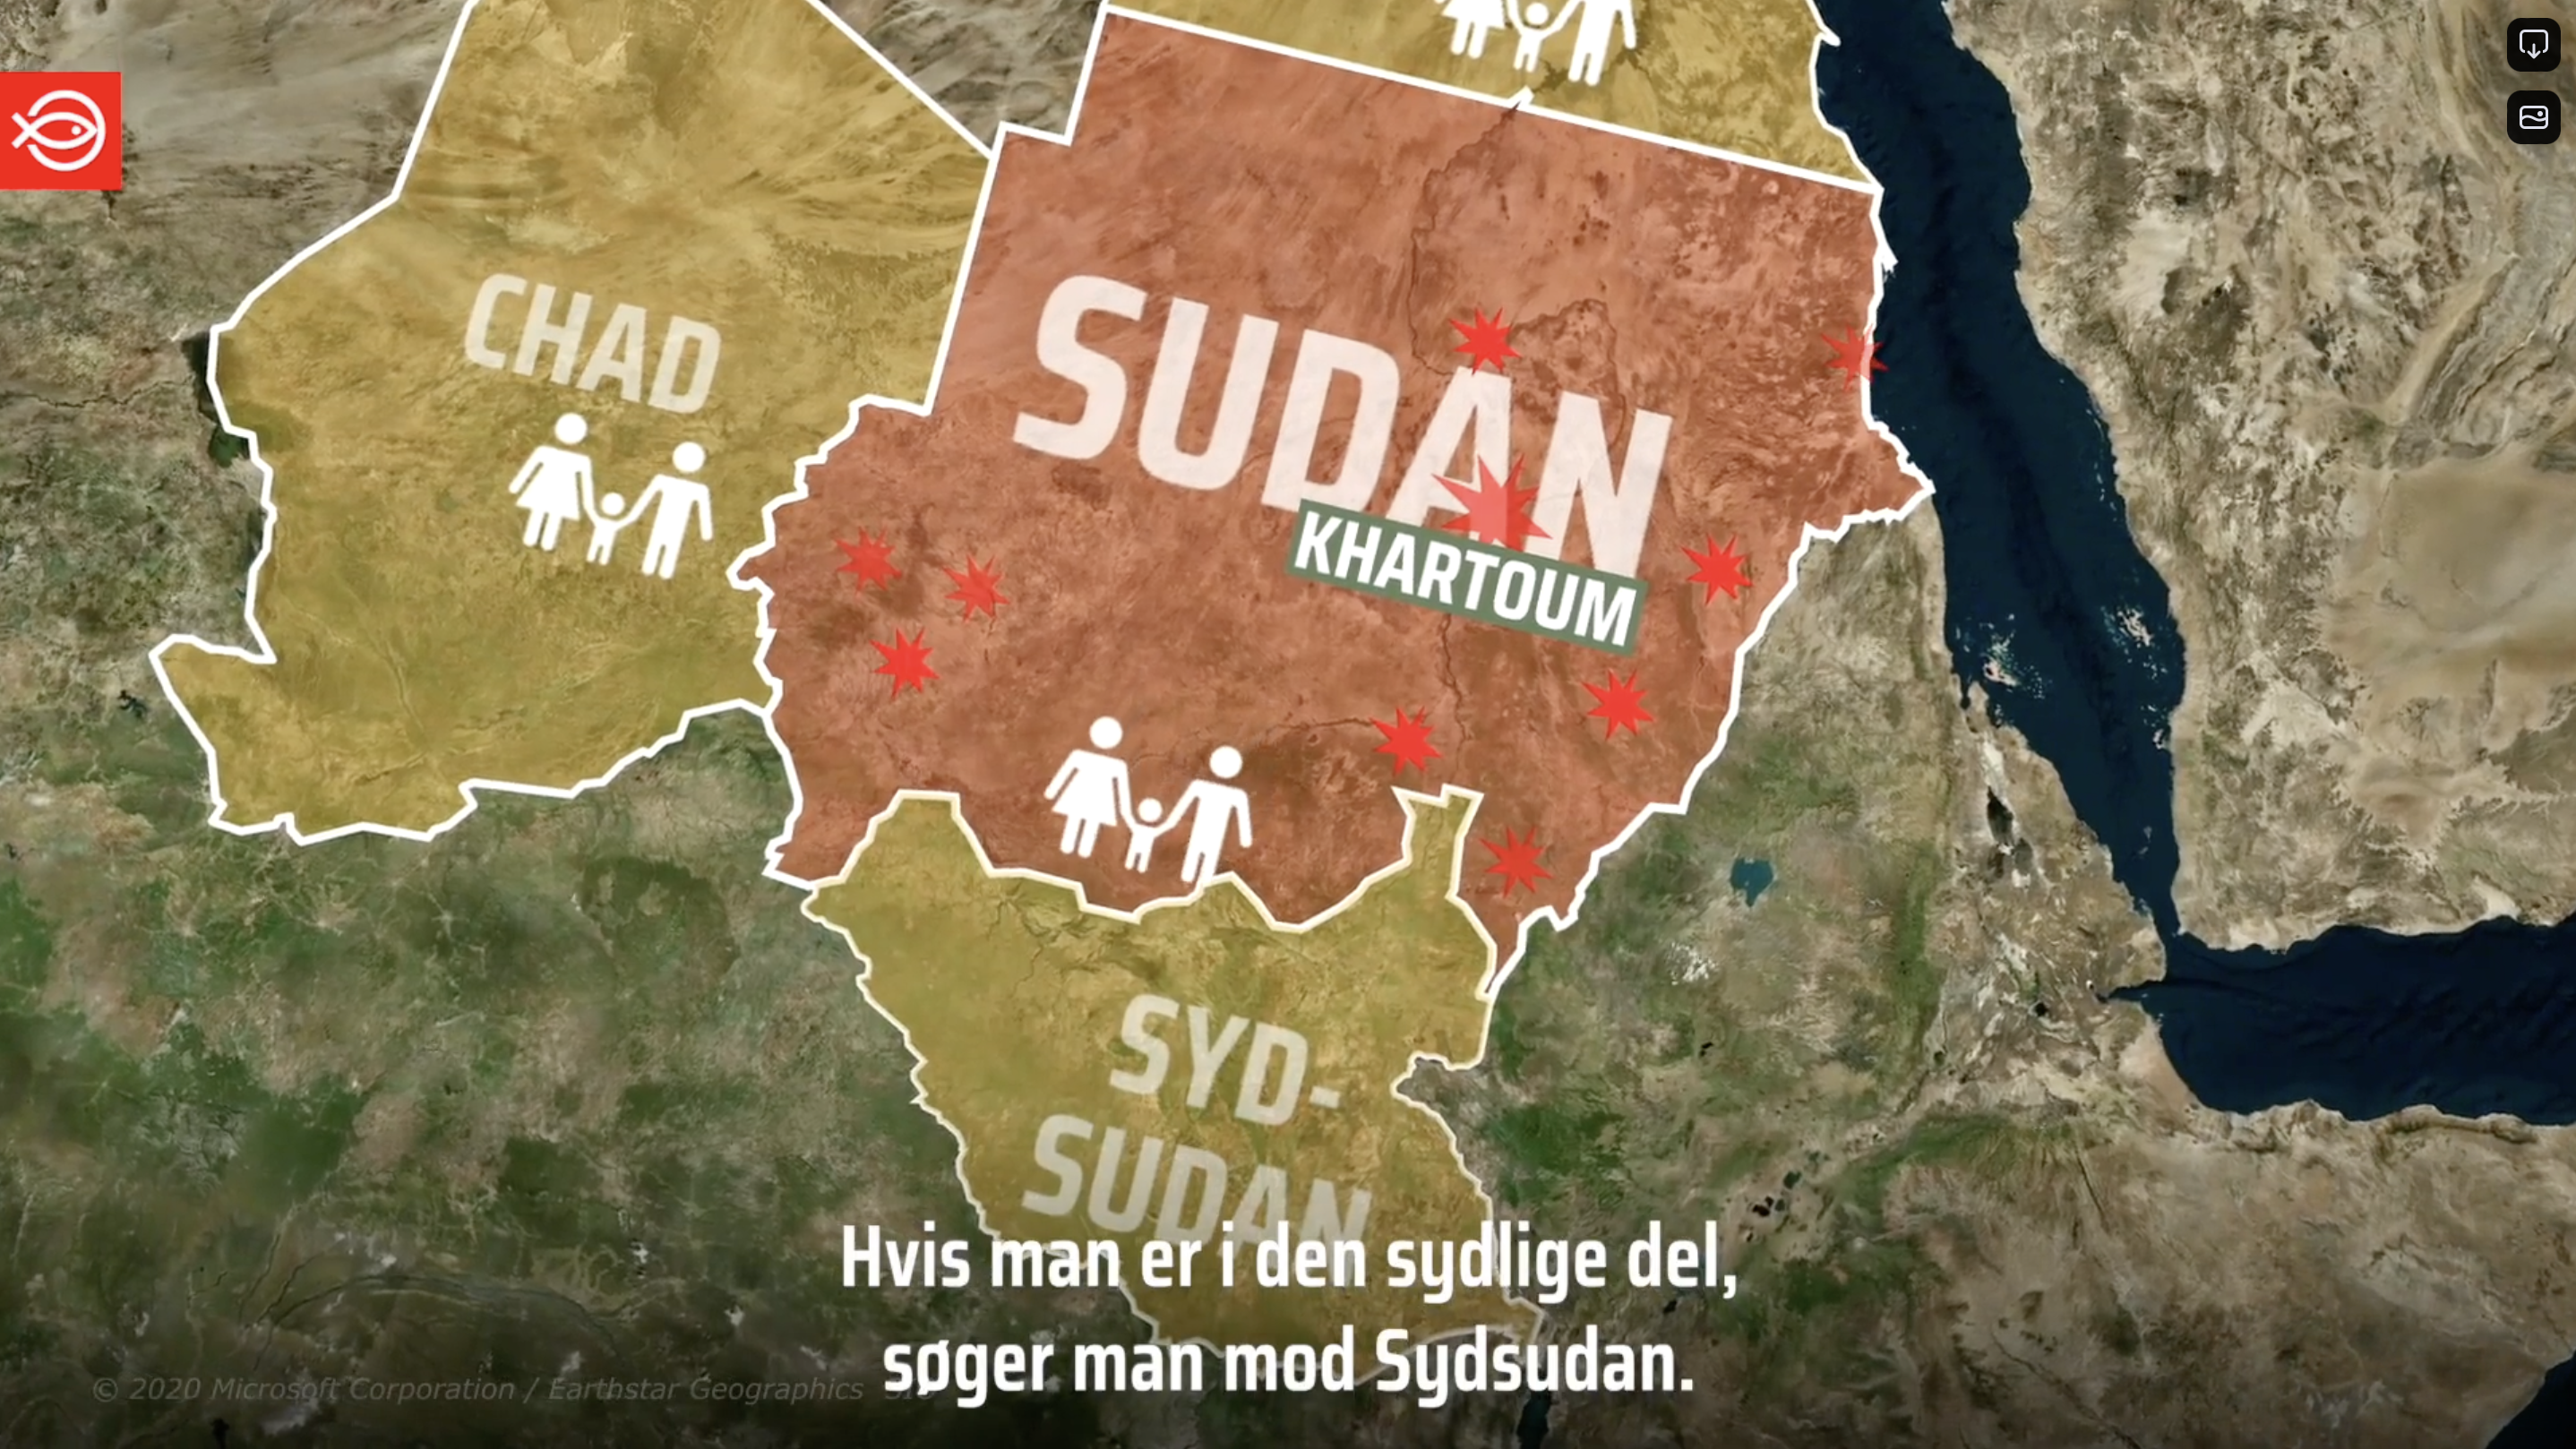 Sudan krisen forklaret